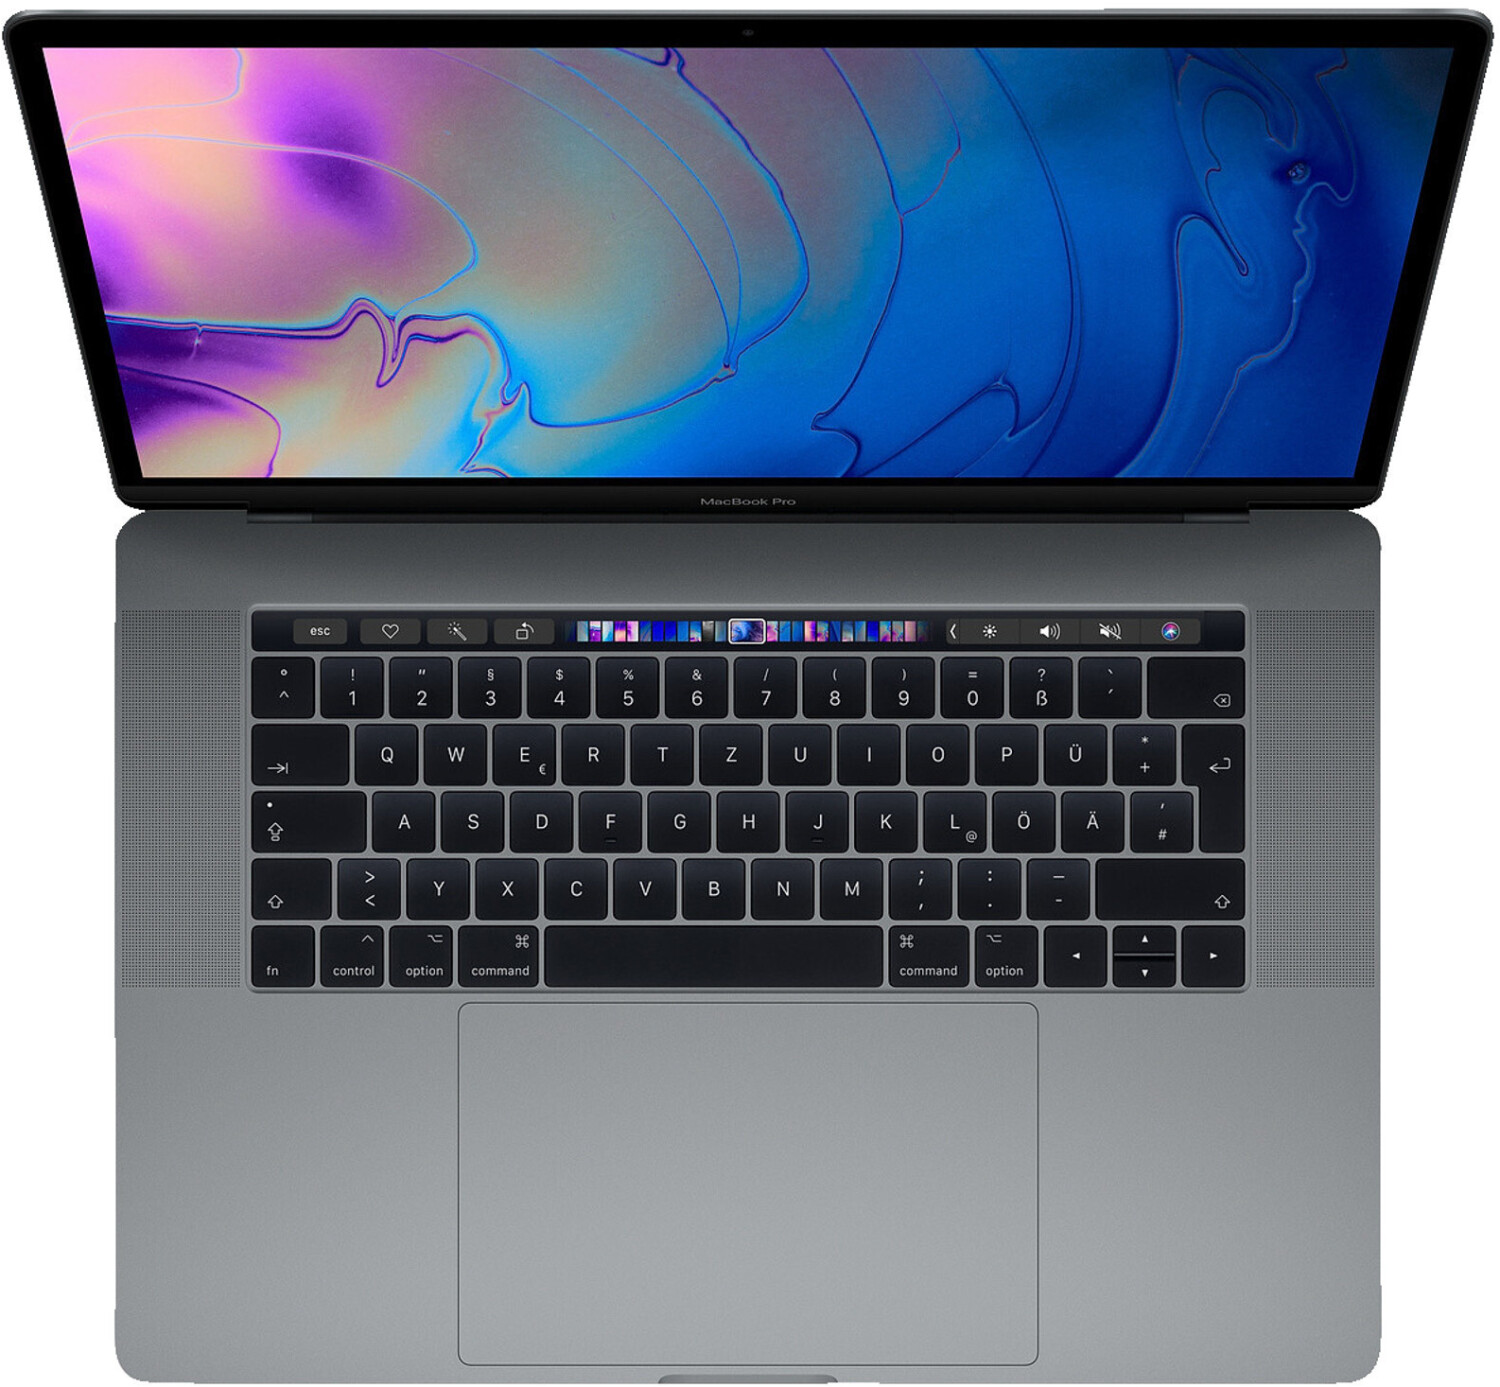 MacBook Air 15 pouces vs MacBook Pro 14 pouces - Tech Advisor